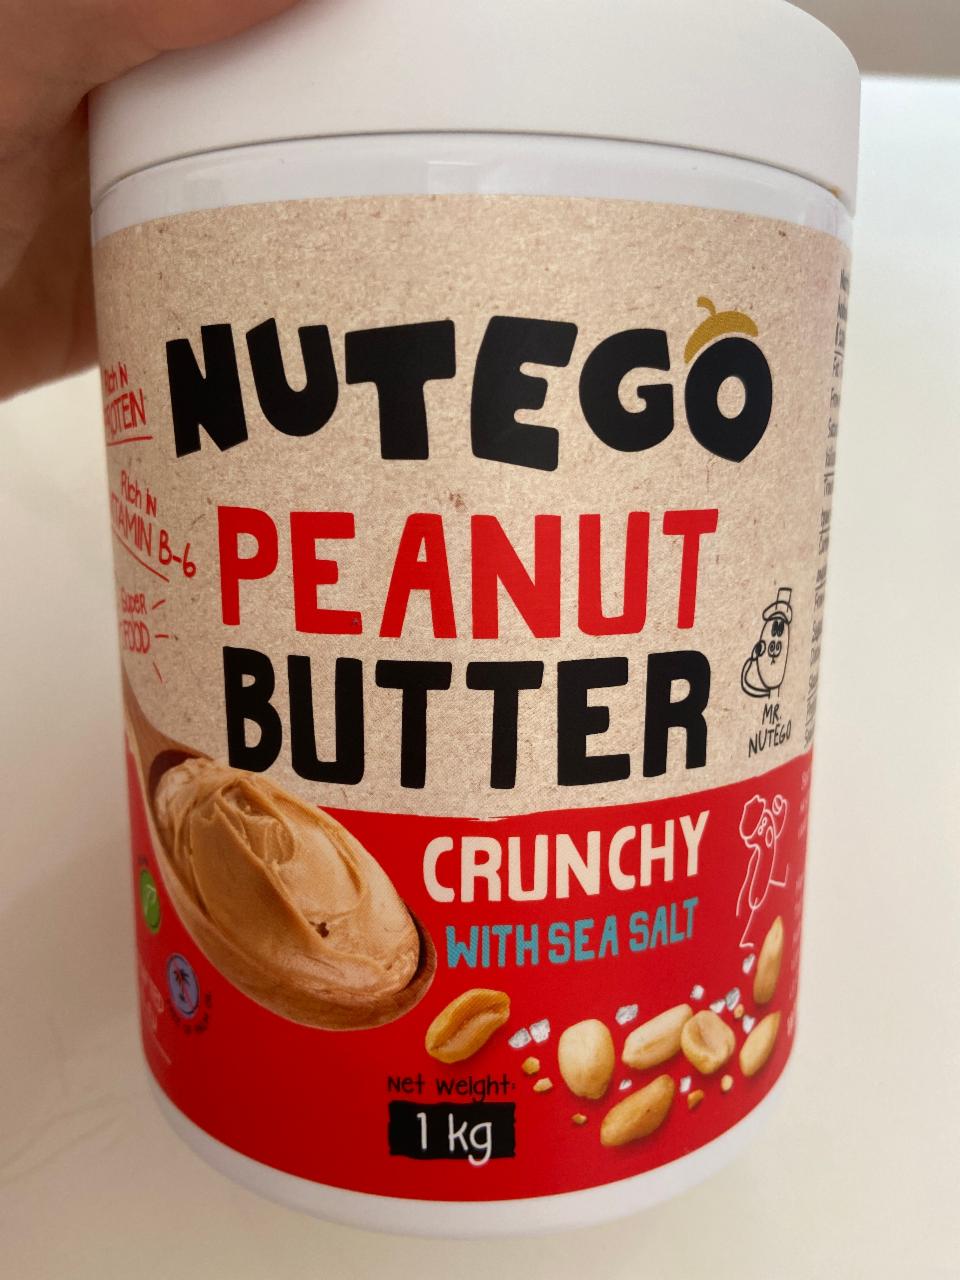 Фото - Паста арахисовая с солью Peanut Butter Crunchy Nutego